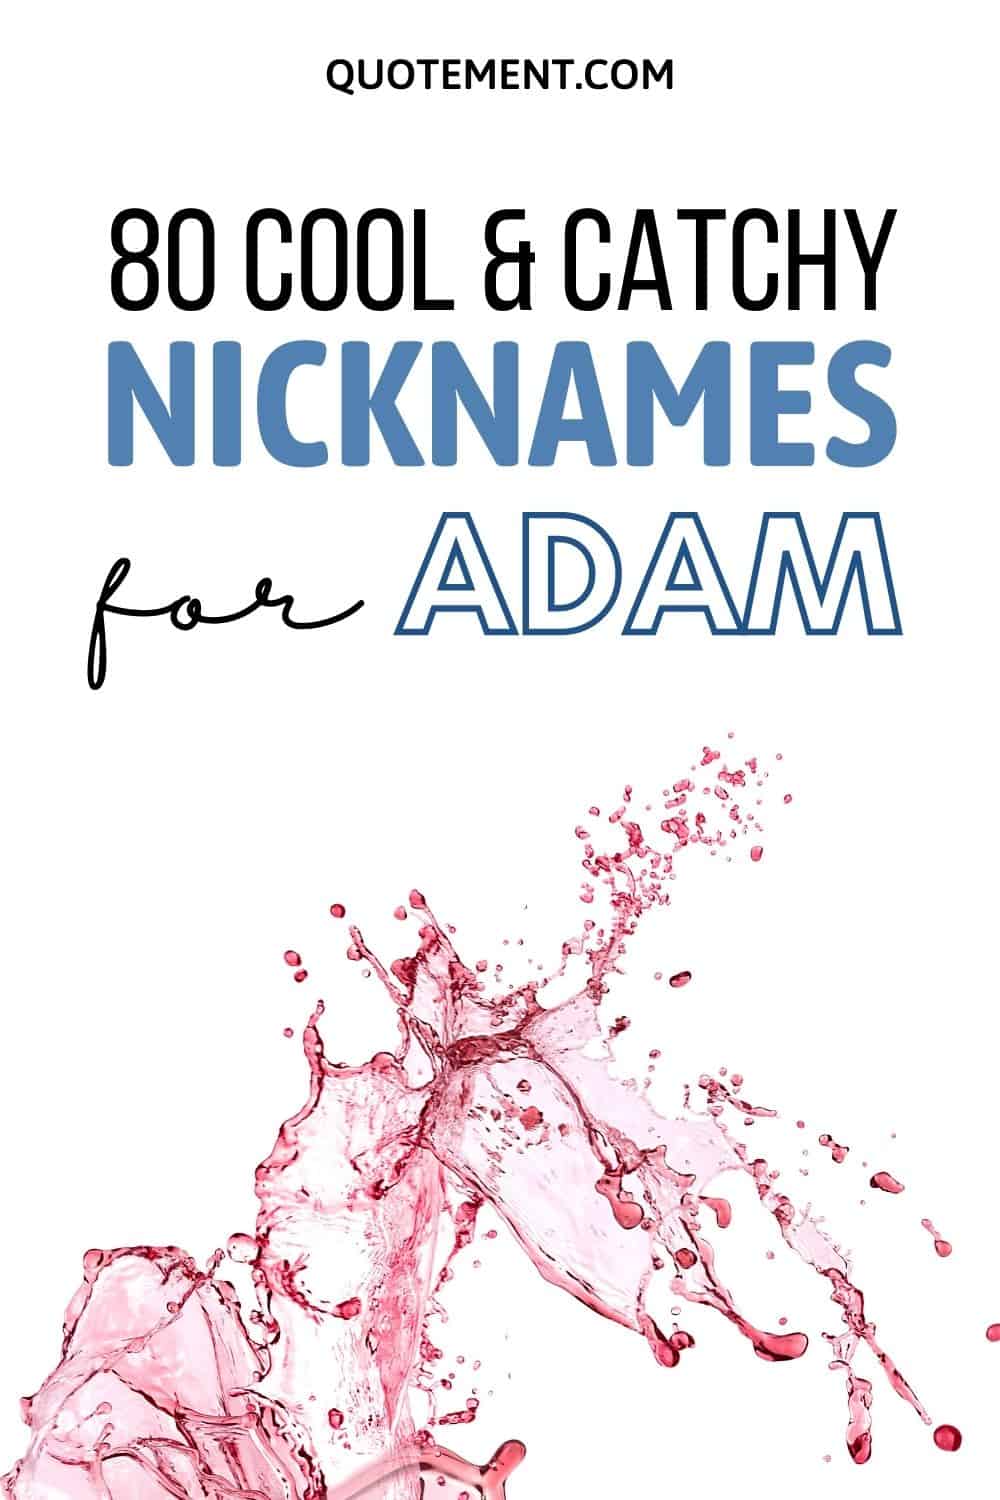 Nicknames For Adam: 80 Cool & Catchy Nickname Ideas